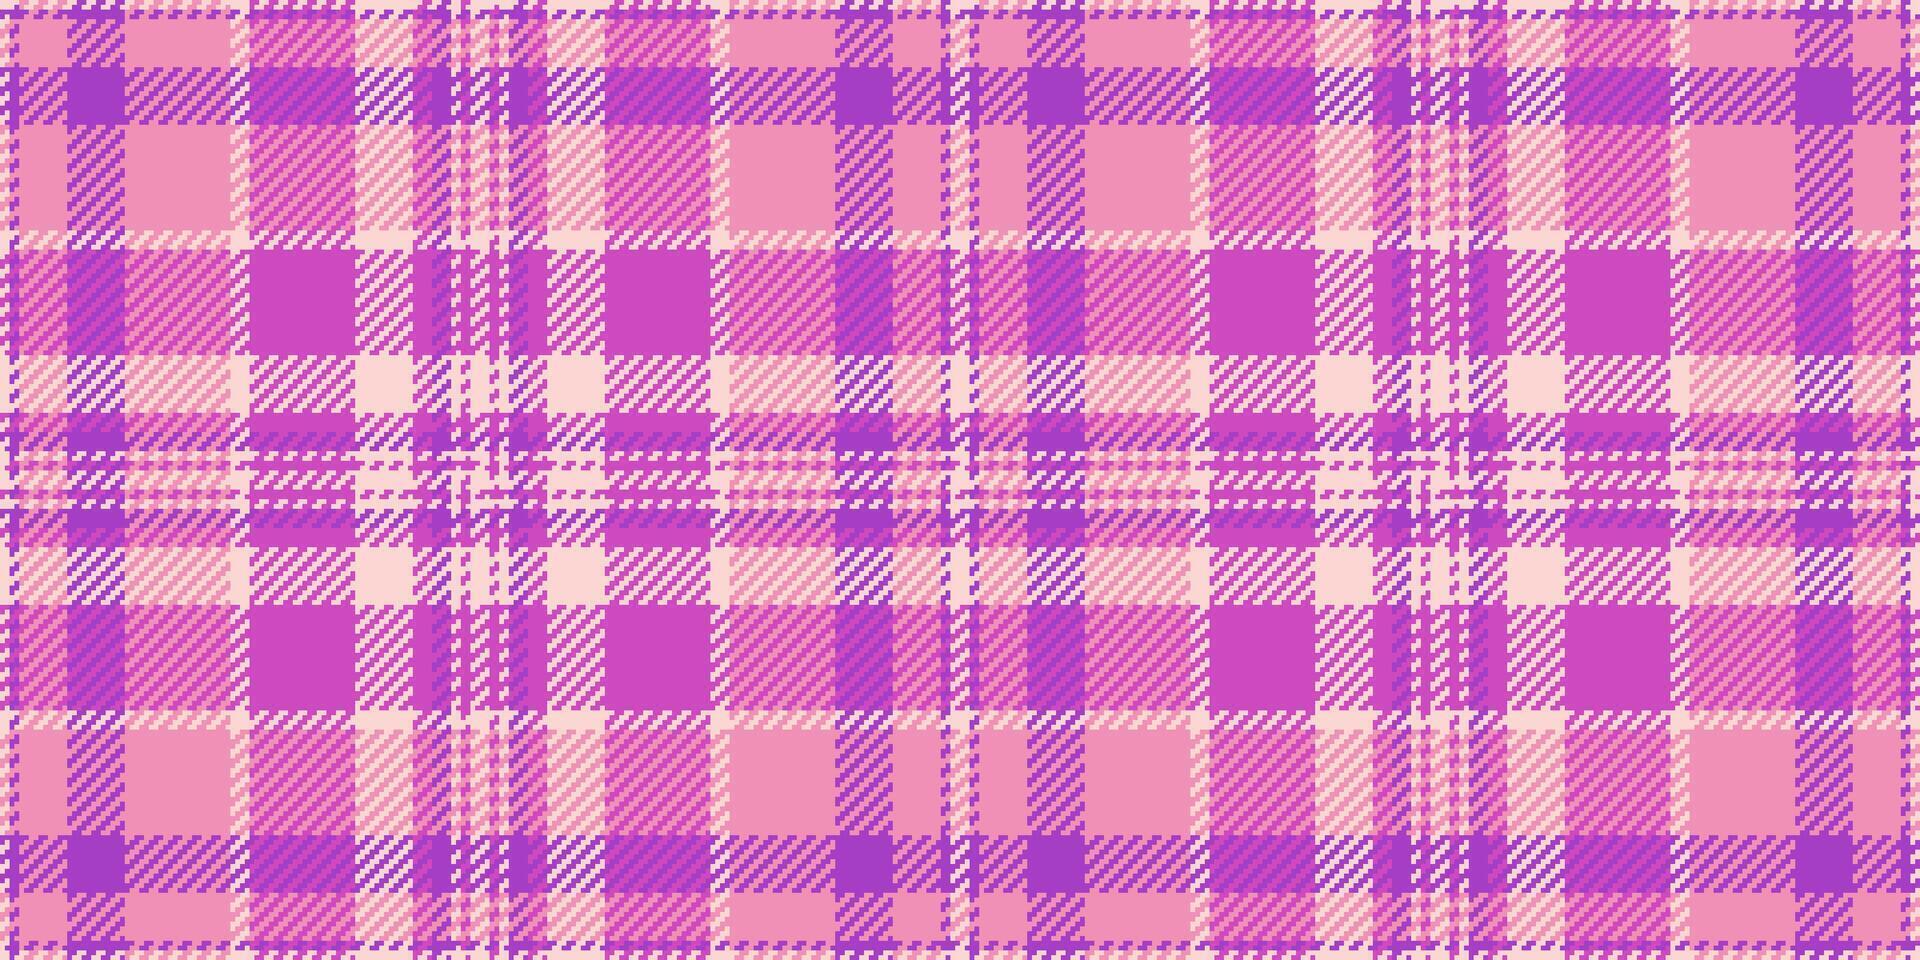 naakt kleding stof textiel textuur, scrapbooking plaid vector achtergrond. kader patroon Schotse ruit naadloos controleren in roze en magenta kleuren.